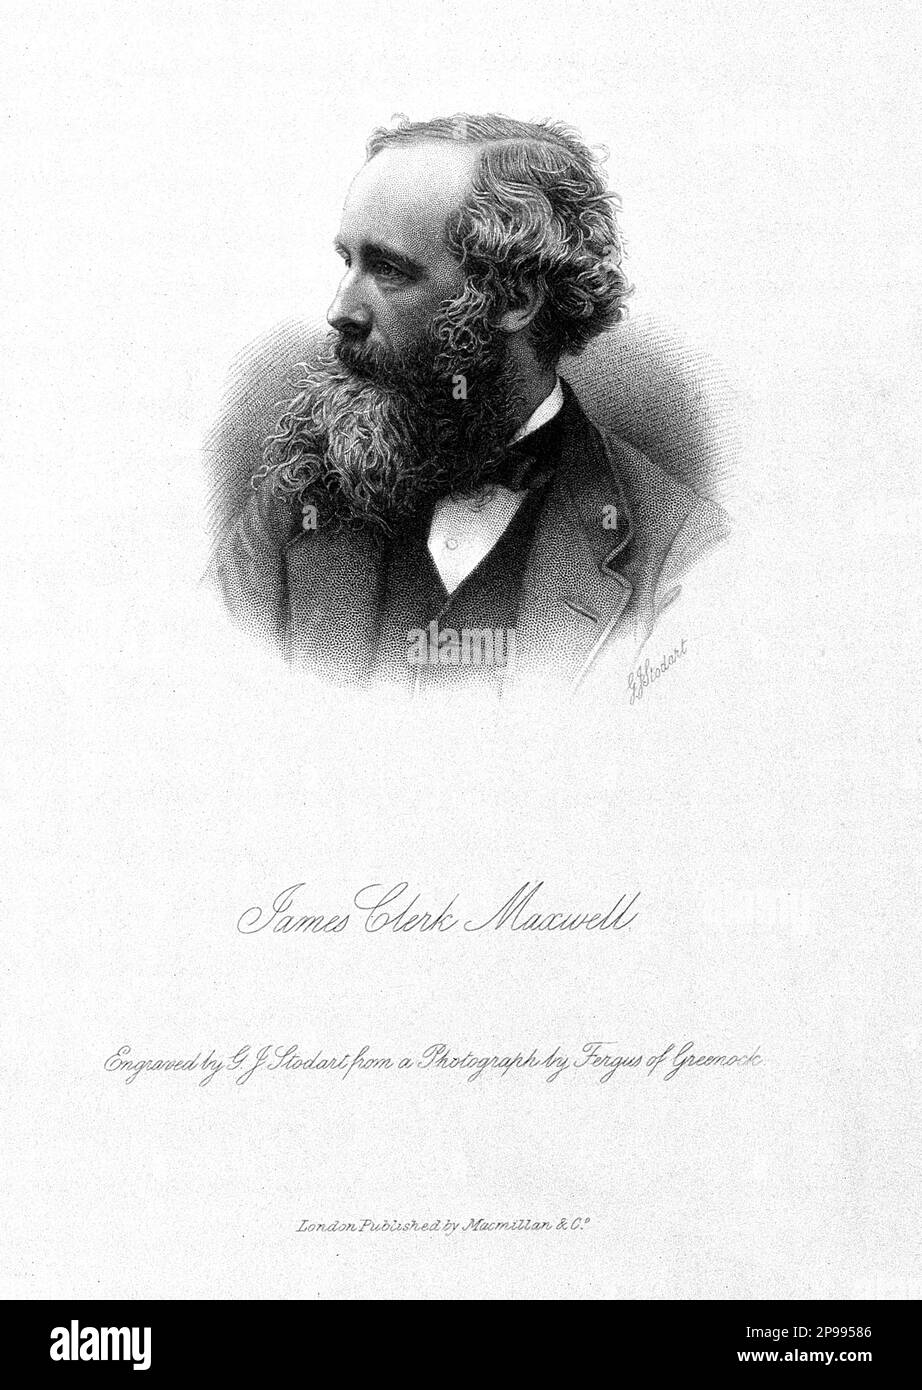 The scotish Physicist  James Clerk MAXWELL ( 1831 - 1879 ). Engraved portrait by by G.J. Stodart from a photograph by Fergus of Greenock , 1881 .   - foto storiche - foto storica  - scienziato - scientist  - portrait - ritratto  -  Physics - FISICA - FISICO - SCIENZA - SCIENCE  - illustrazione  - engraving - beard - barba - profilo - profile  ----   Archivio GBB Stock Photo